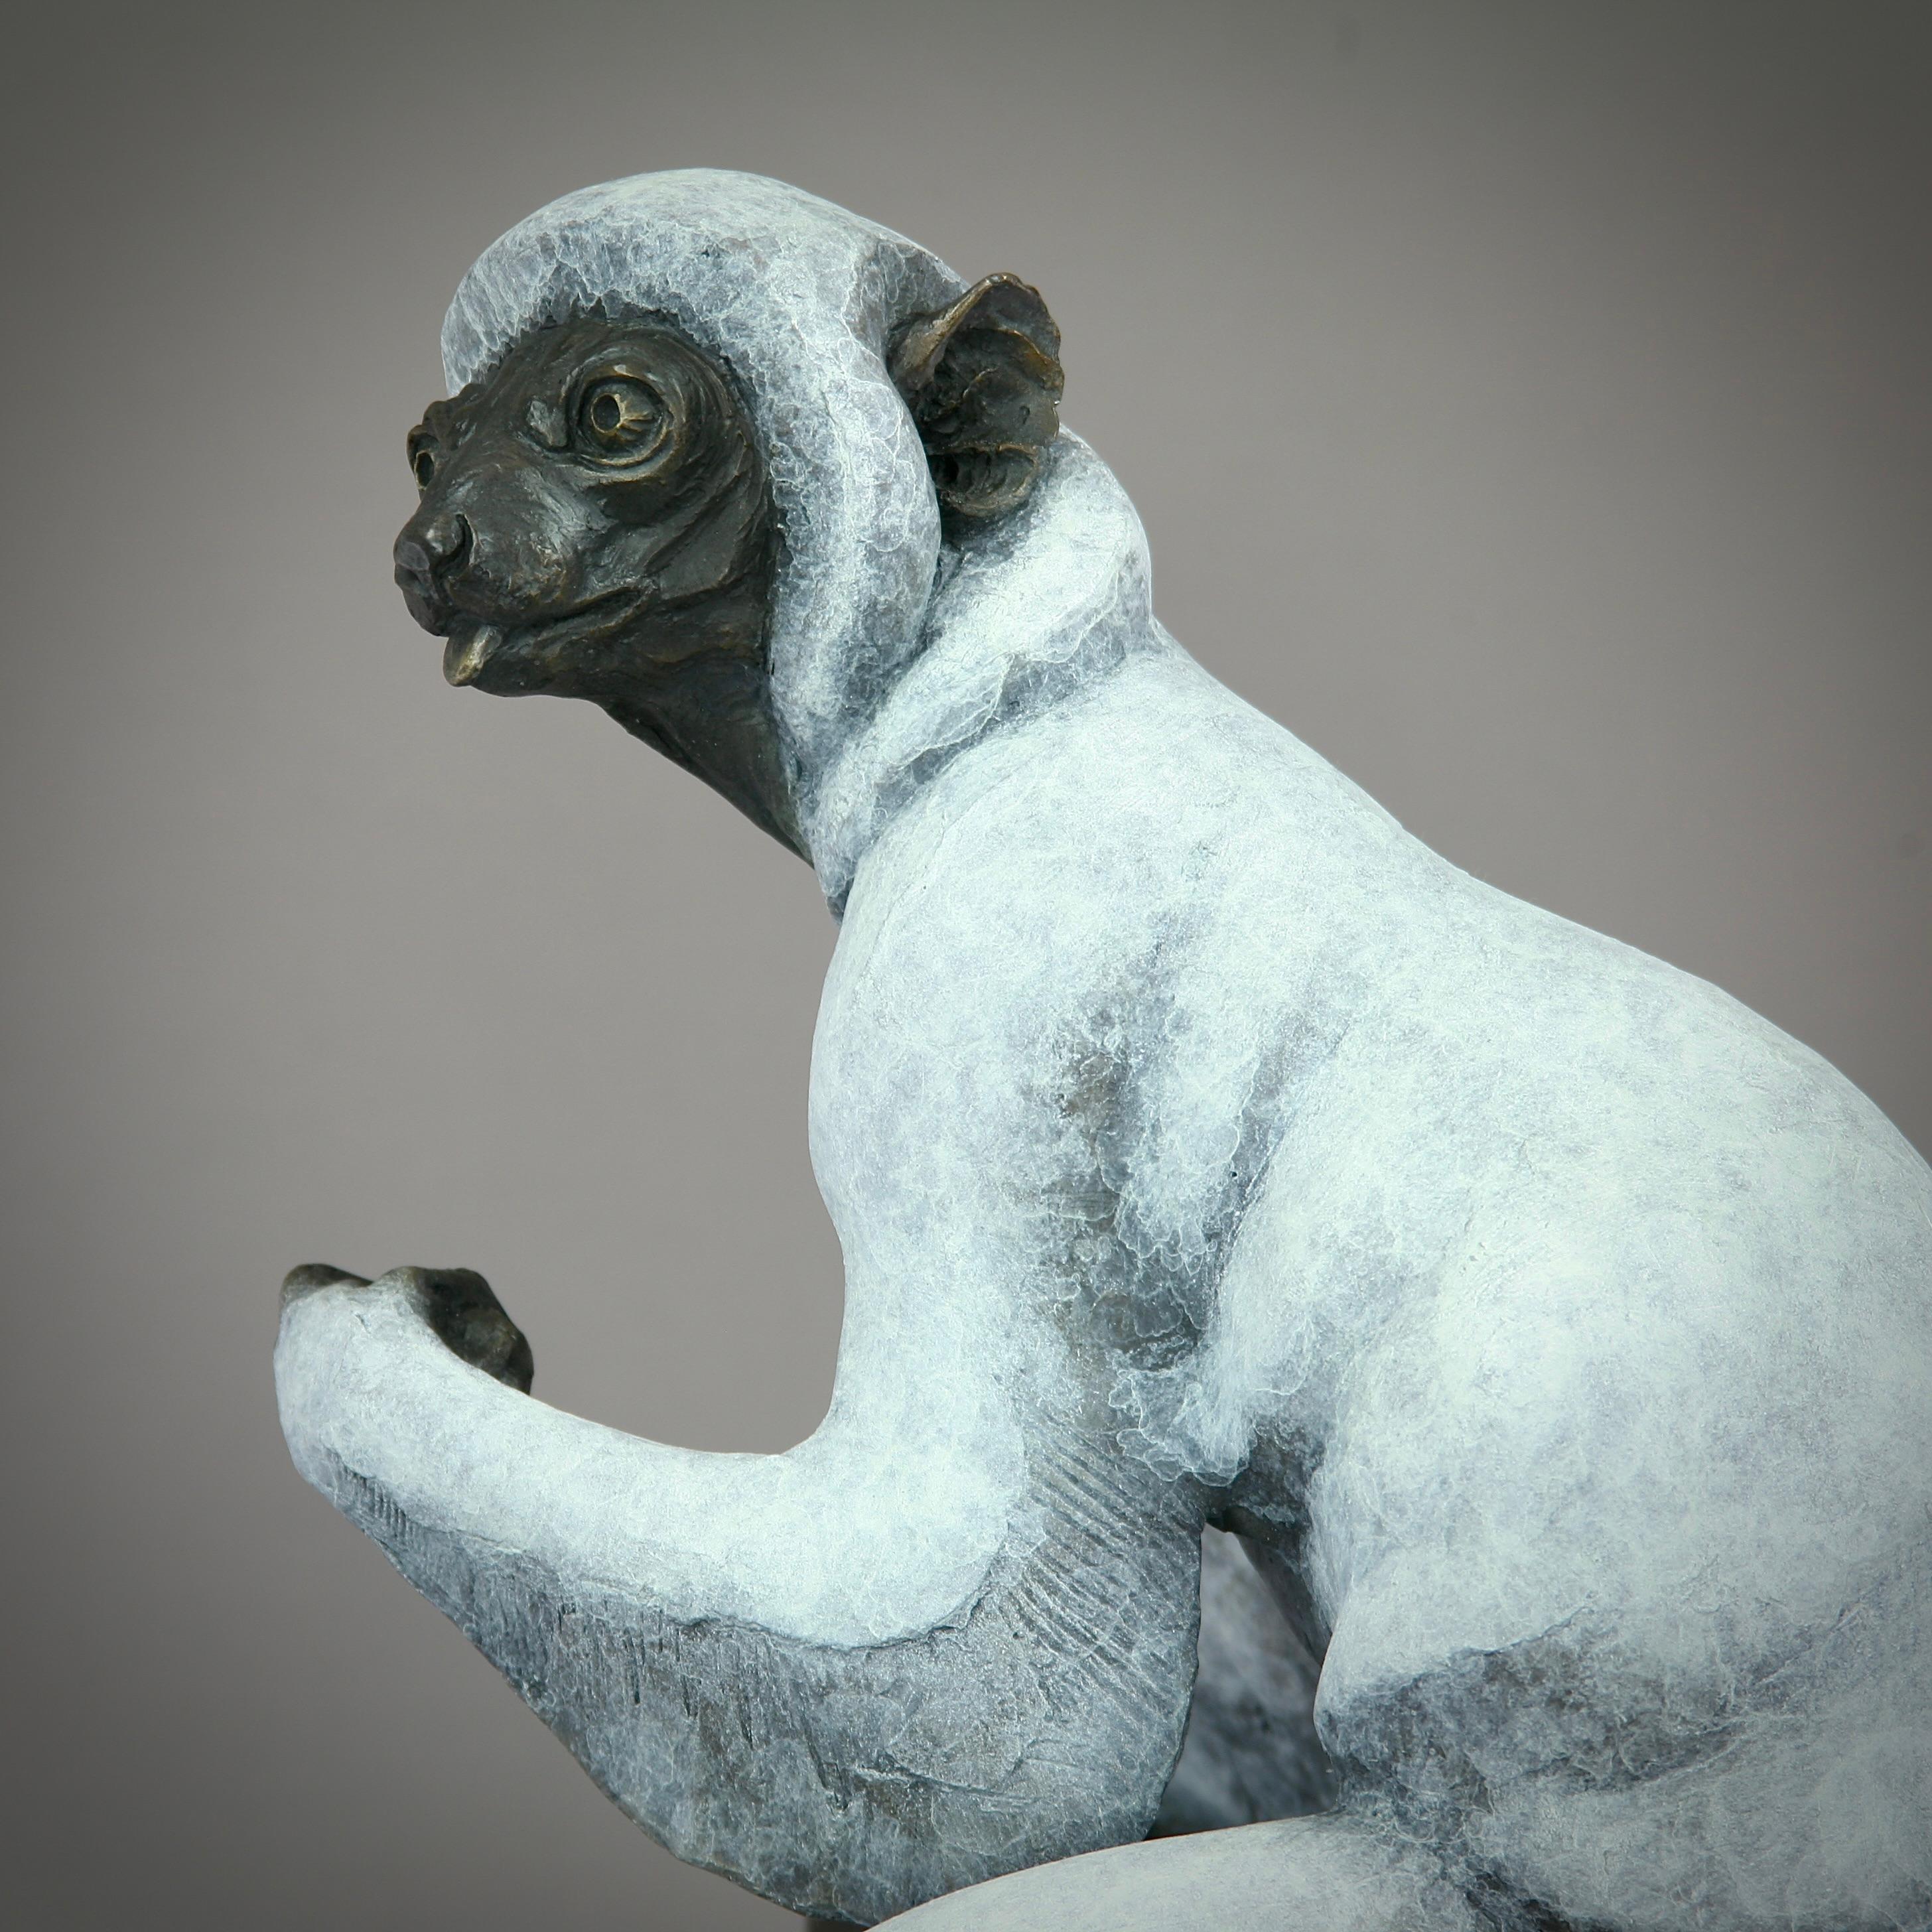 Bronze , Limitierte Auflage von 12 Stück

Tauchen Sie ein in die bezaubernde Welt Madagaskars mit 